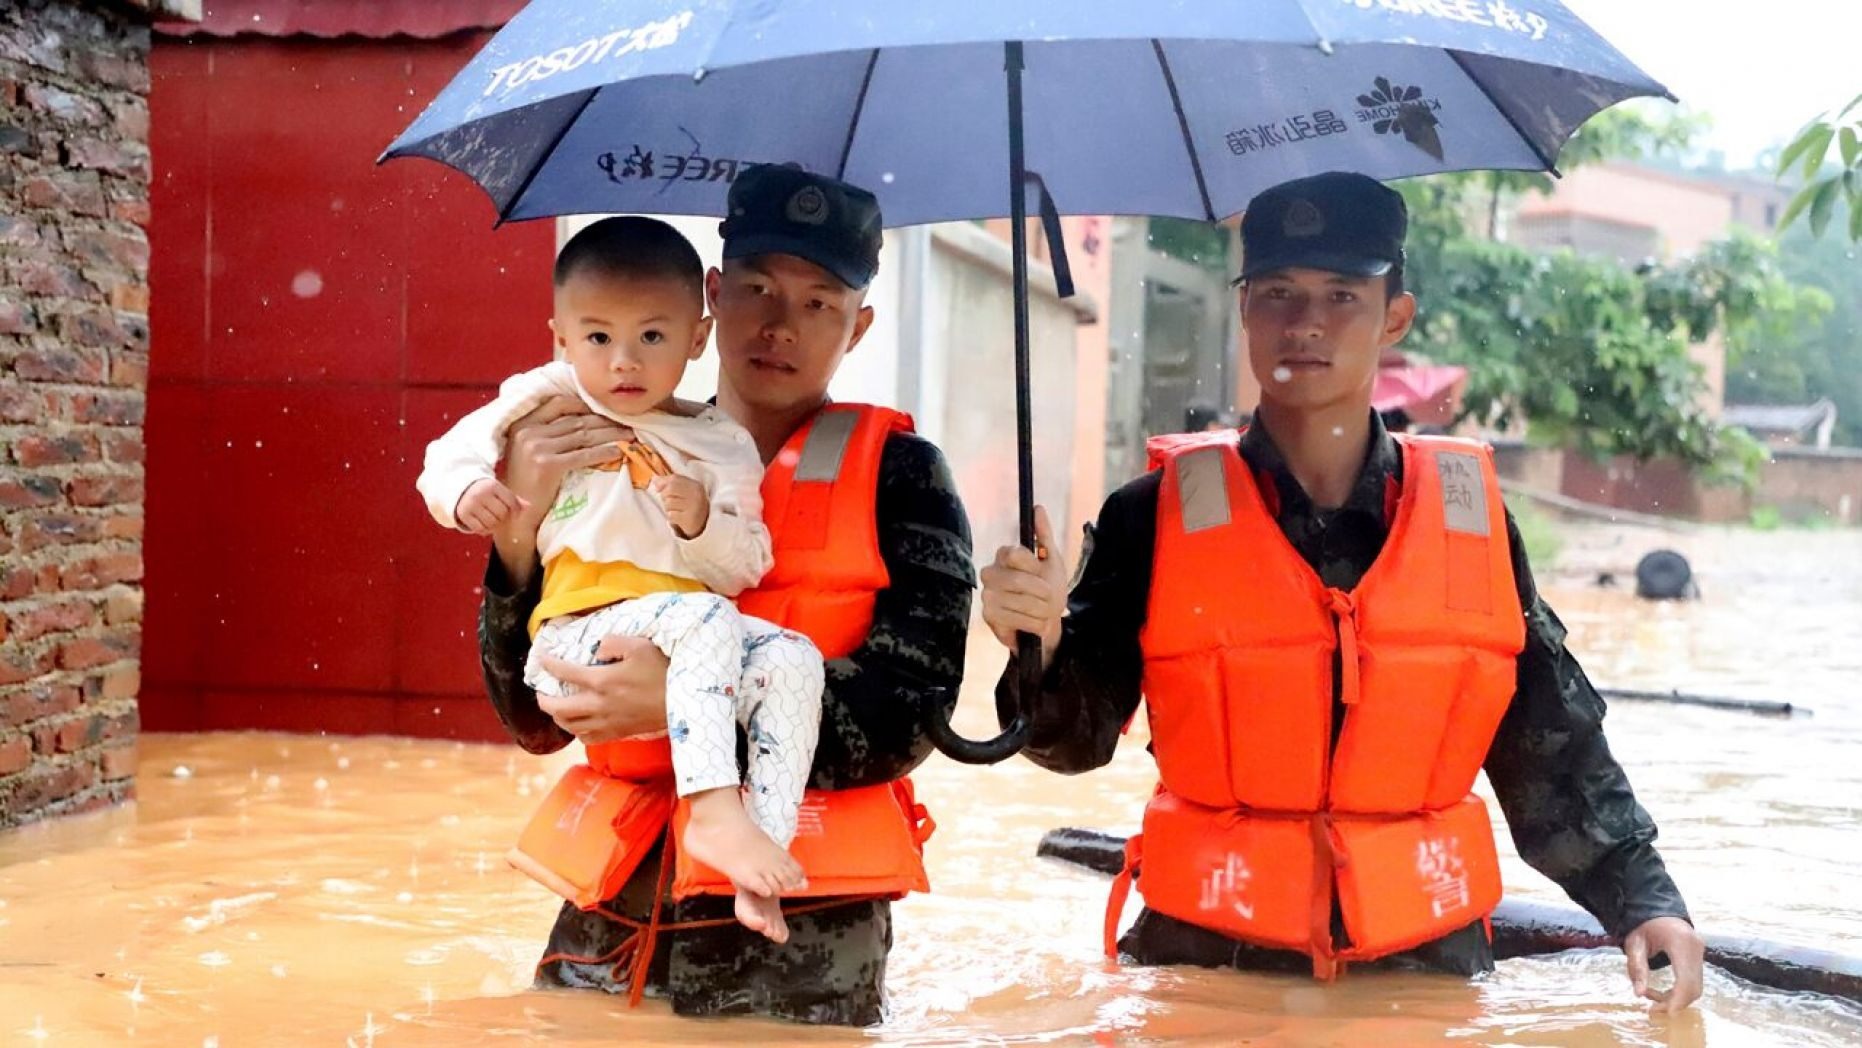 Trung Quốc: 1.300 ngôi nhà bị phá hủy, 228.000 người chạy lũ khẩn 2